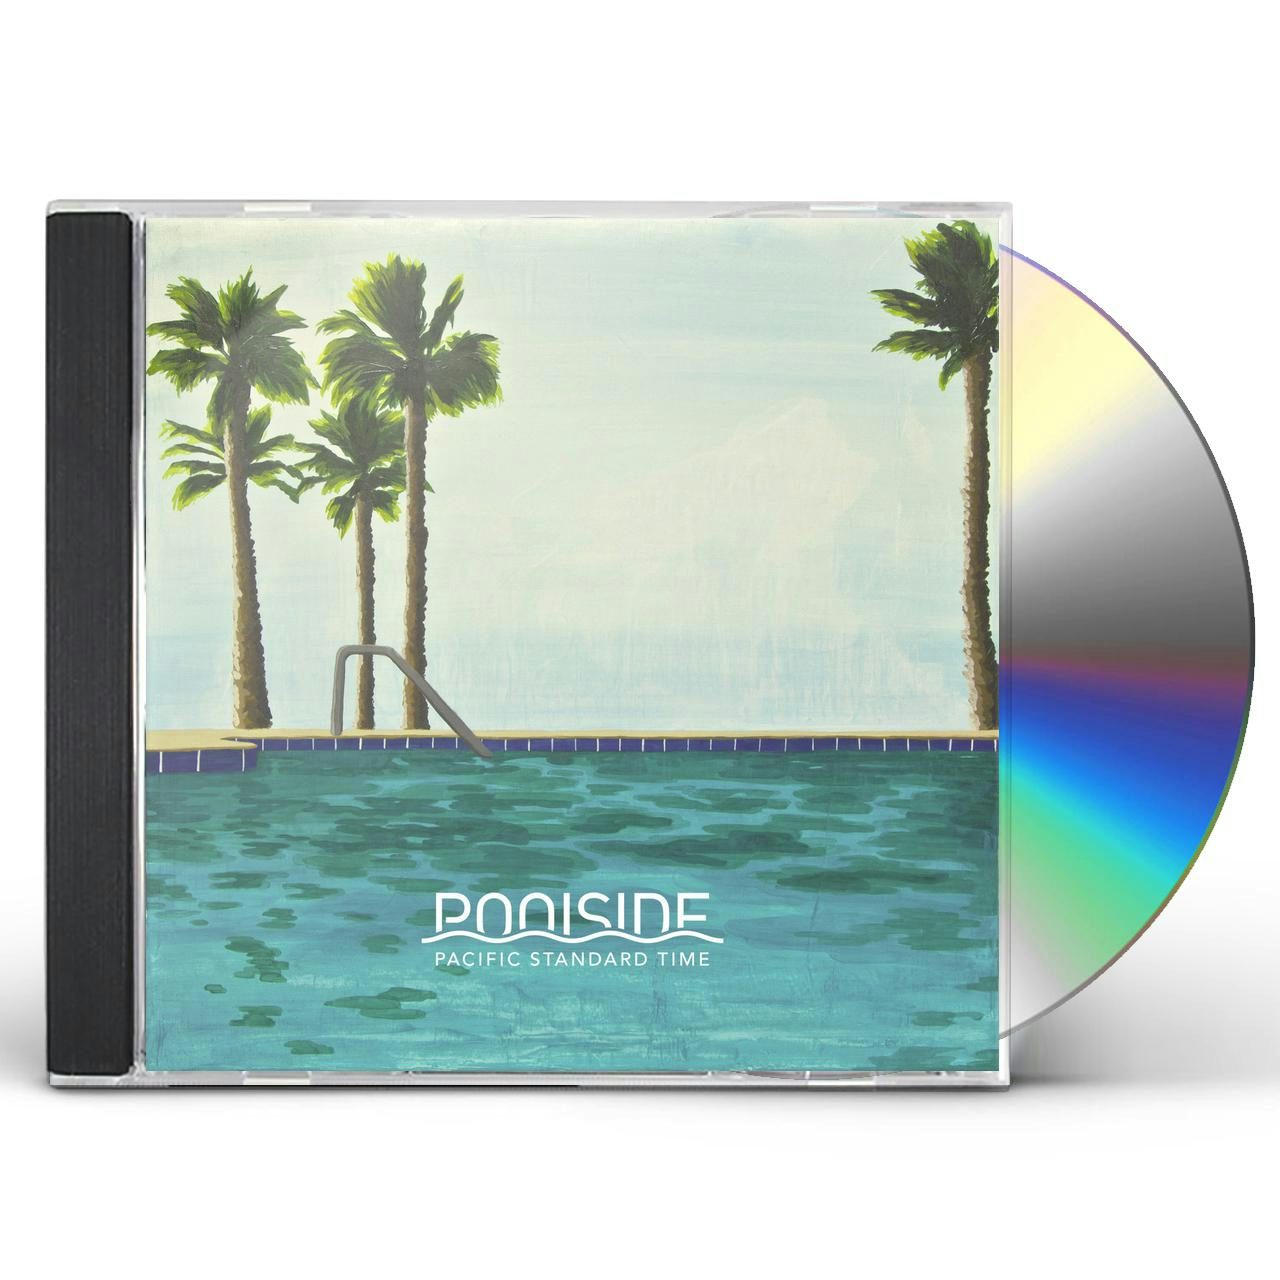 販売オンライン 激レア2LP! Poolside / Pacific Standard Time - レコード